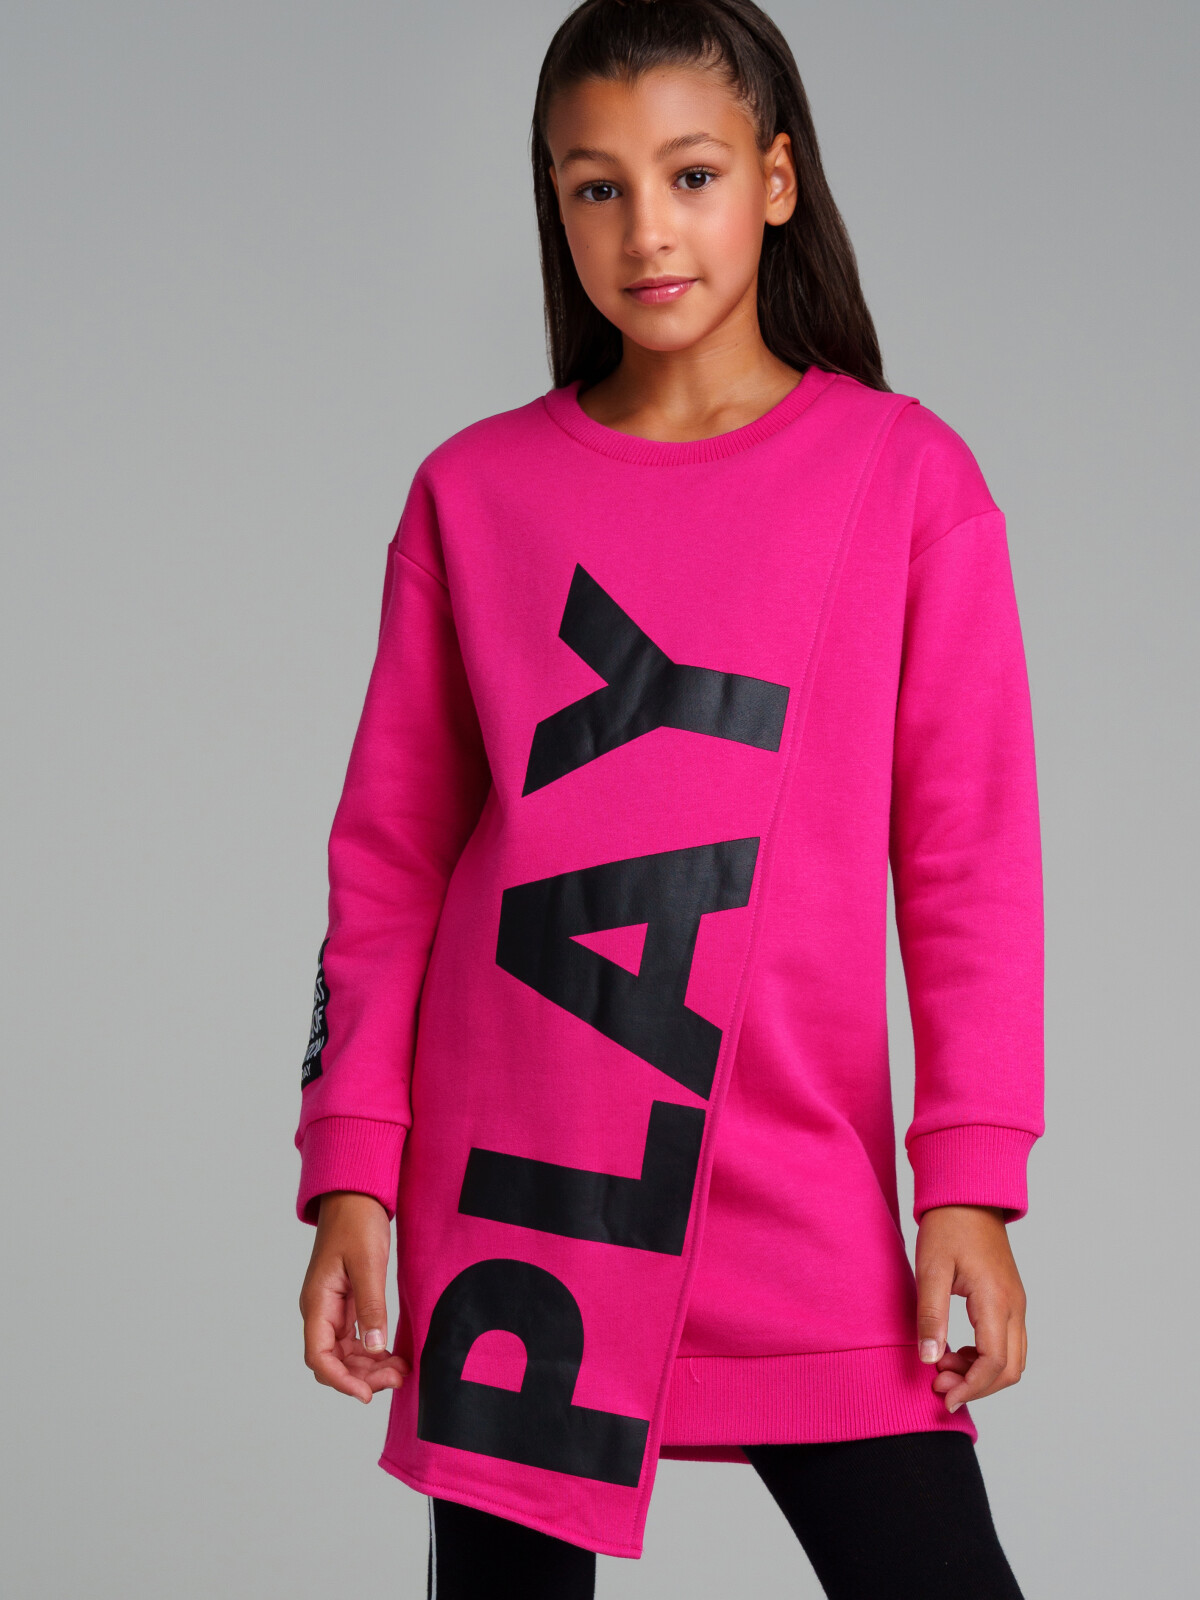 Платье трикотажное для девочек PlayToday, фуксия,черный, 152